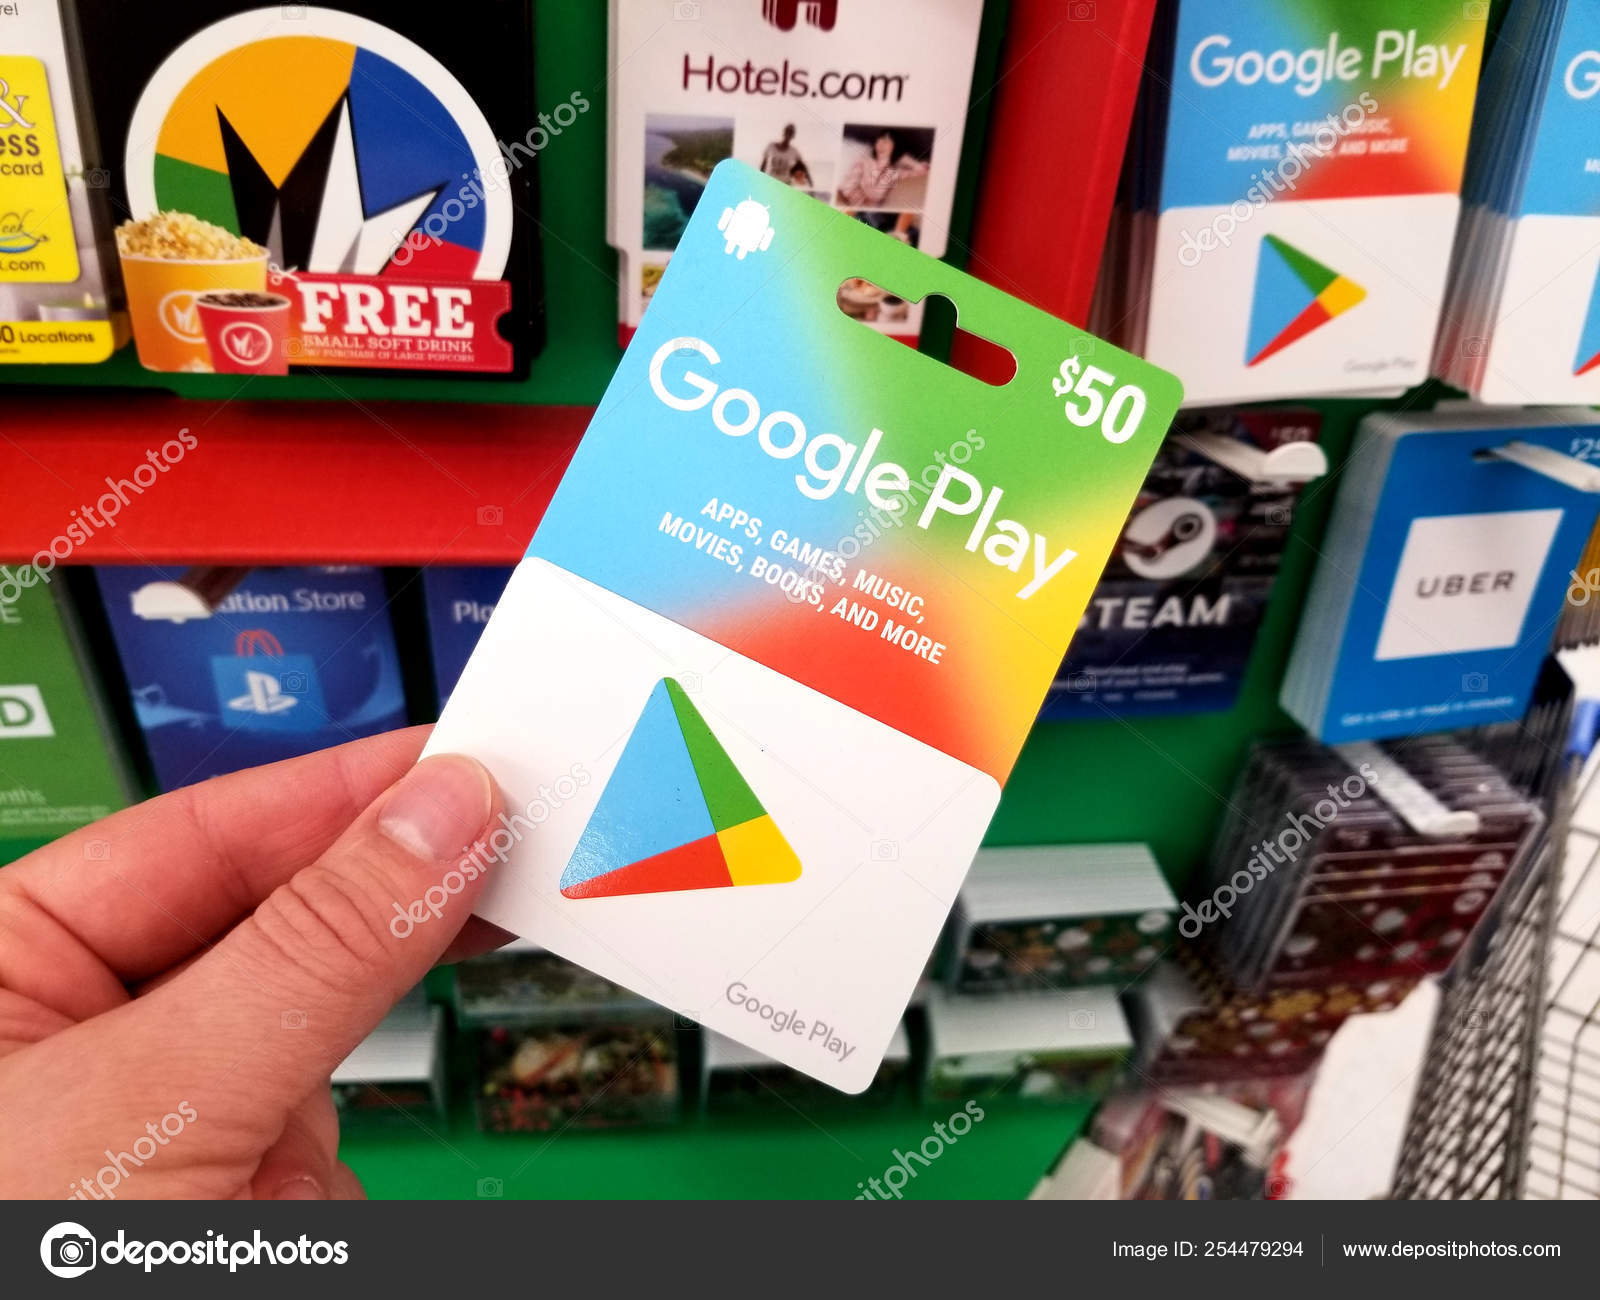 Como usar o Gift Card da Google Play